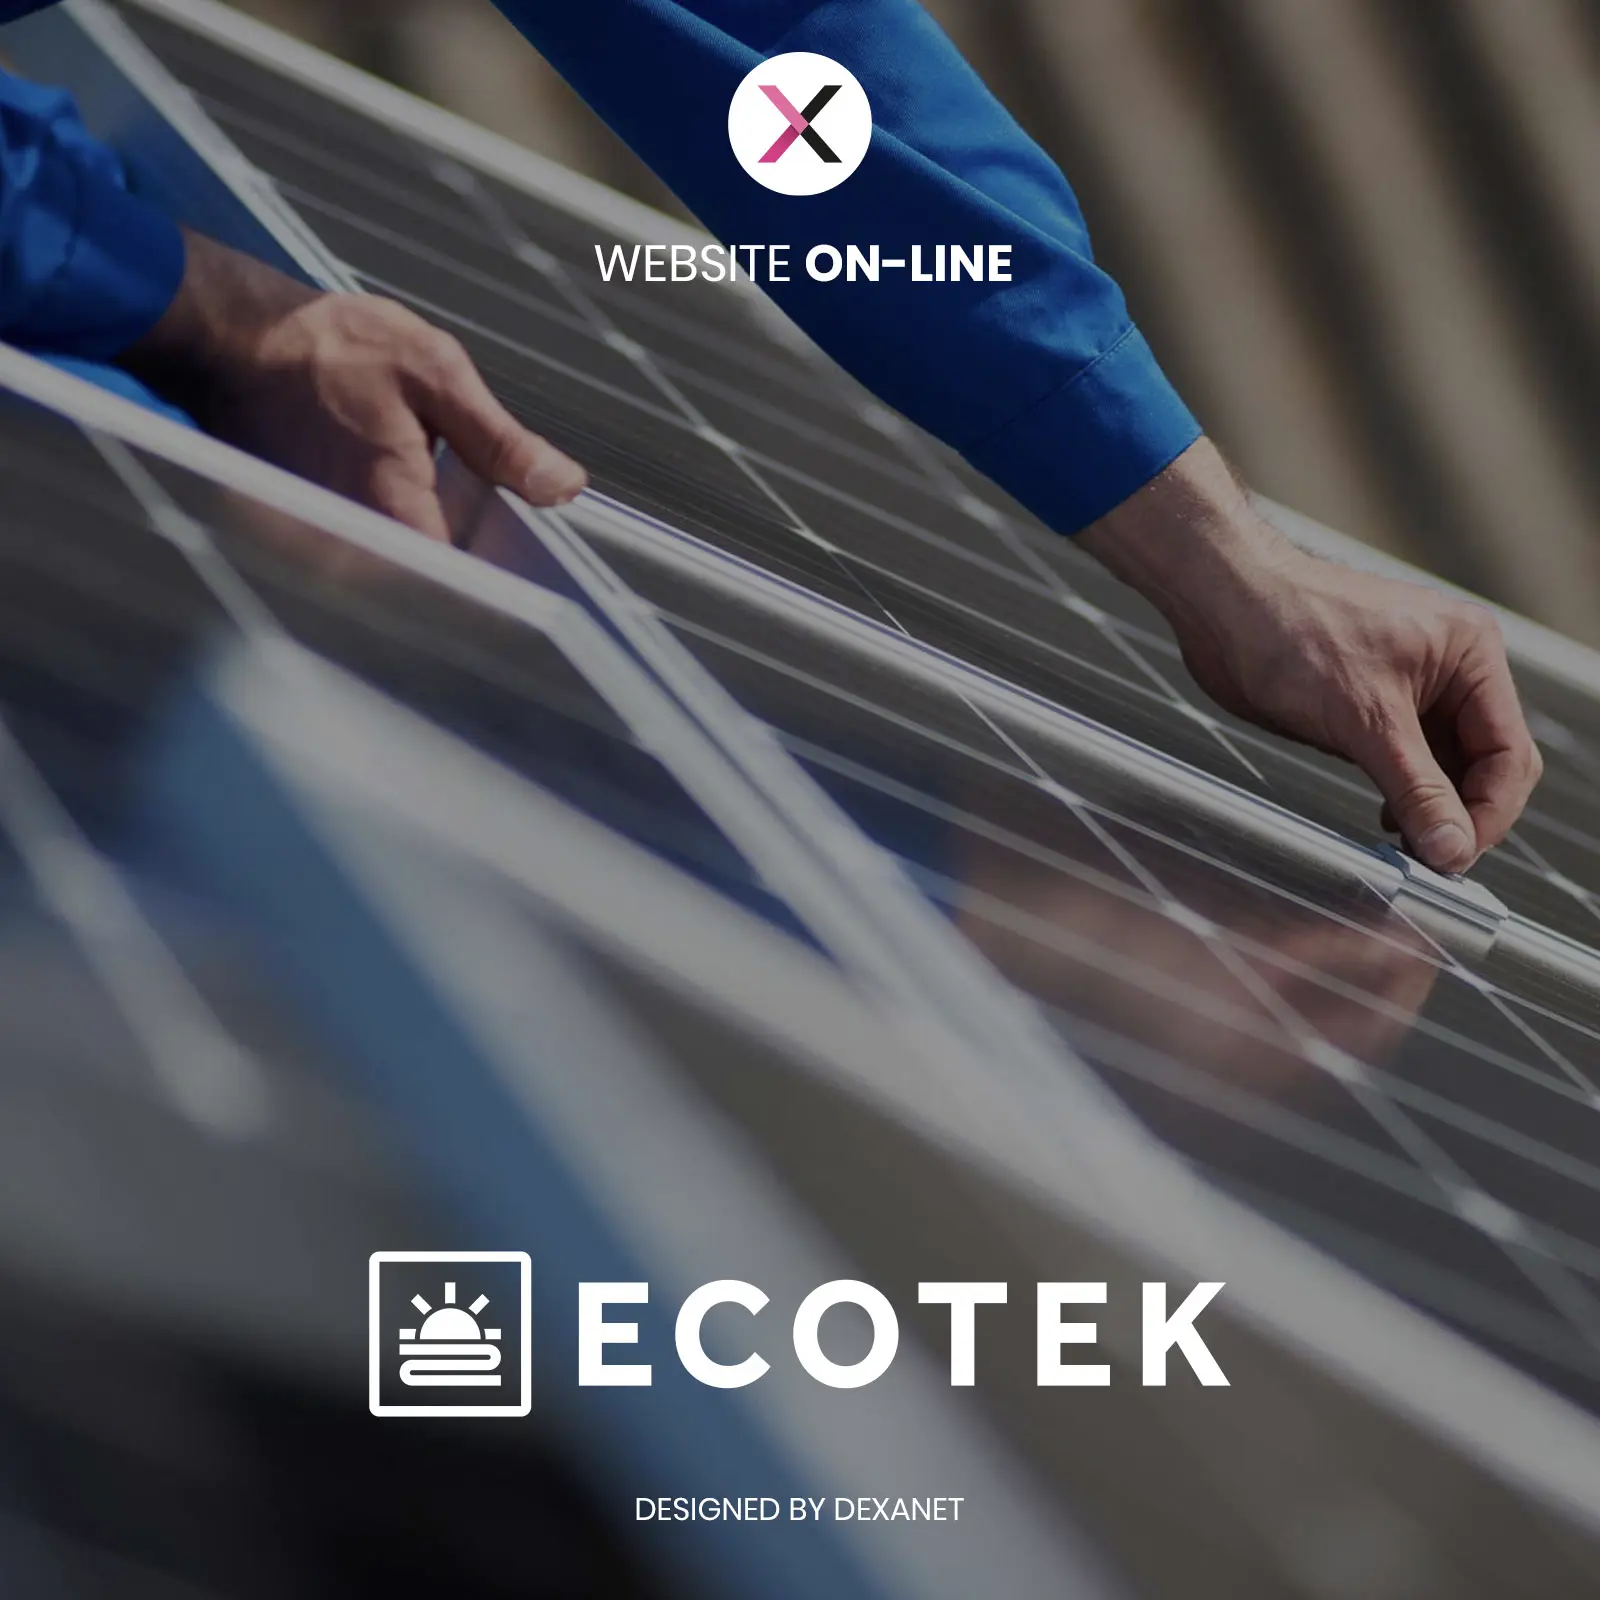 Nuova energia sul web: lo sviluppo del sito ECOTEK, azienda di efficientamento energetico.